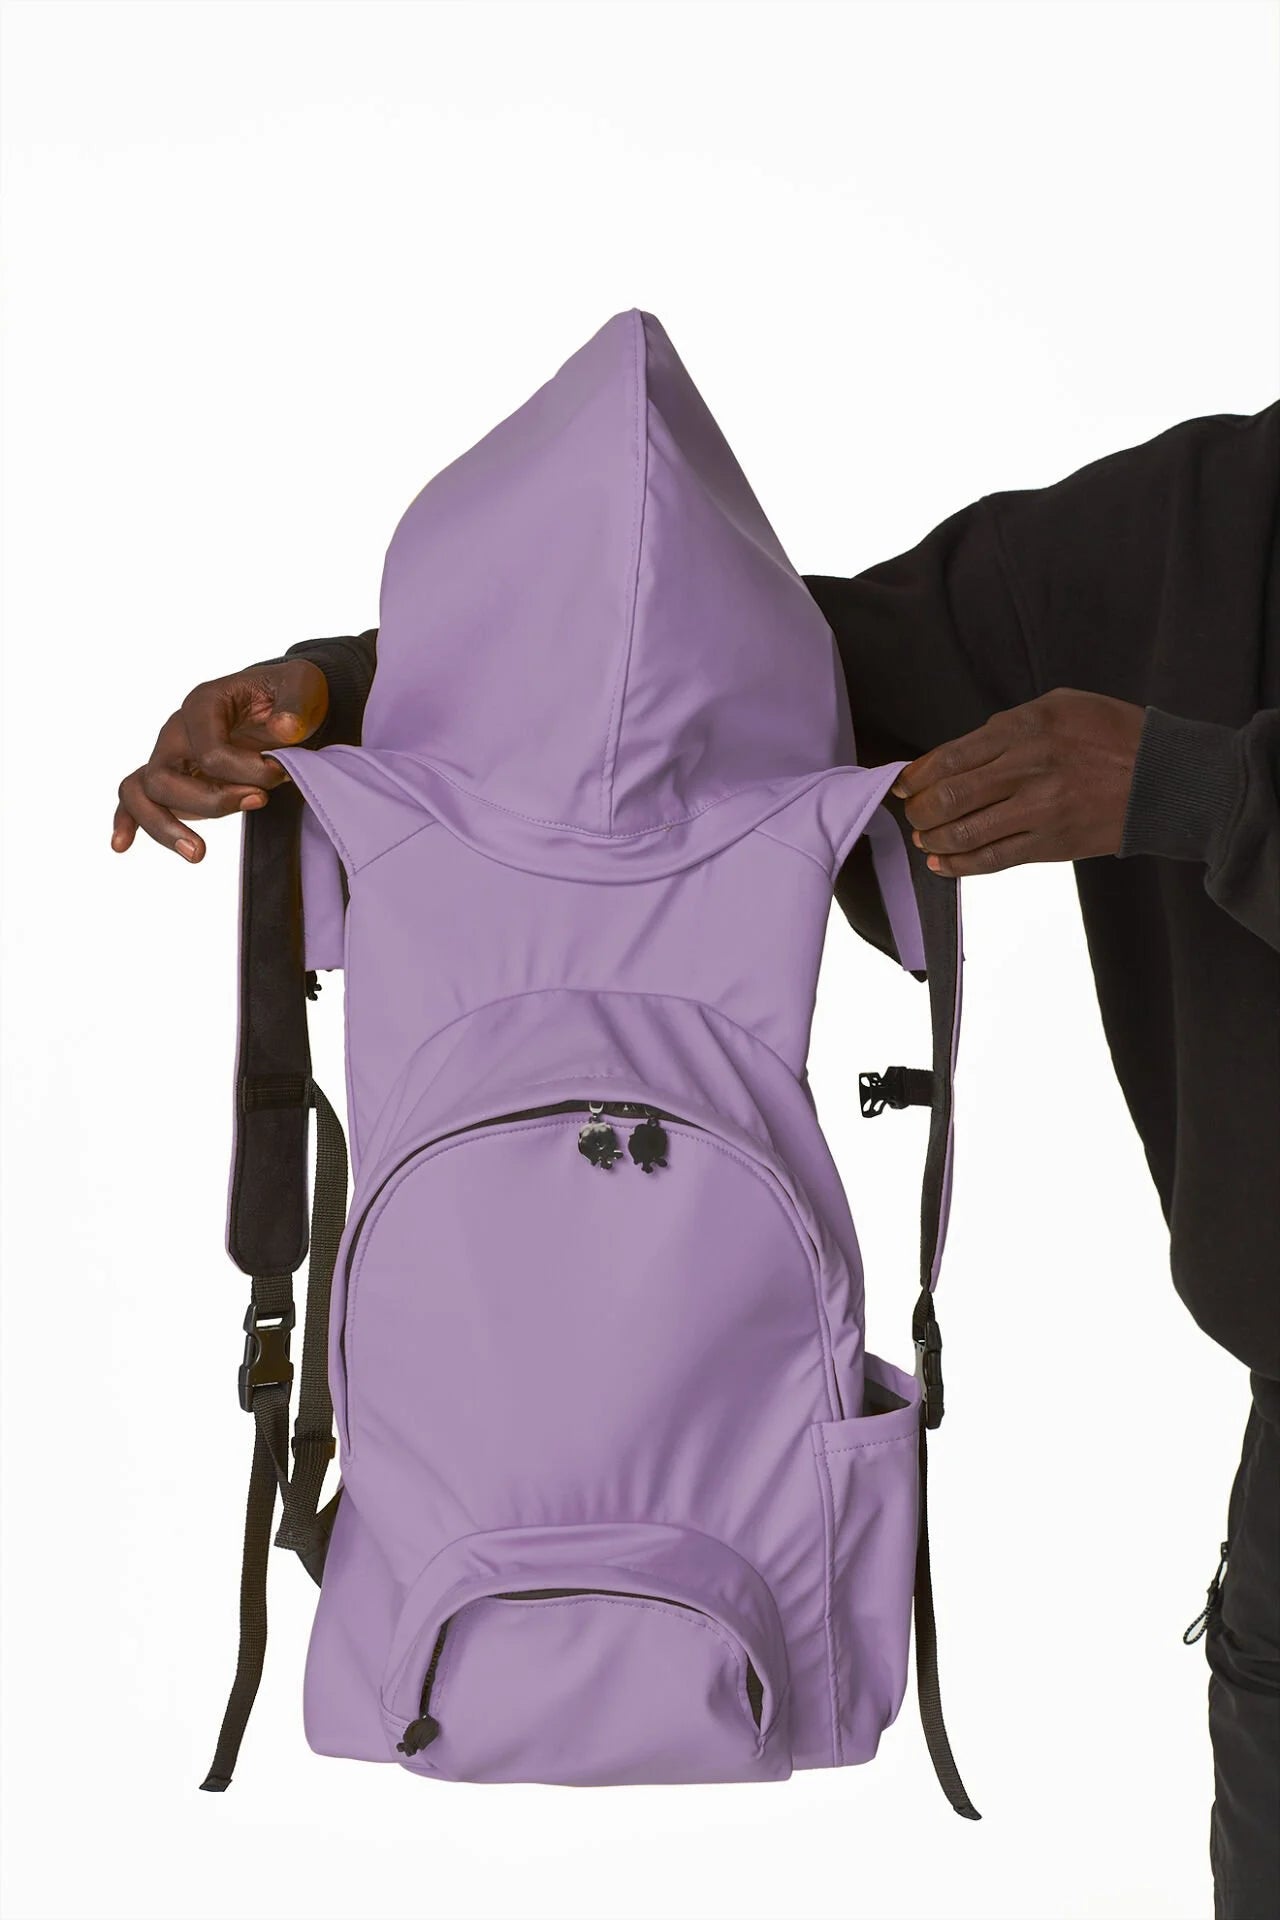 Morikukko Gummy Lilac Hooded Backpack